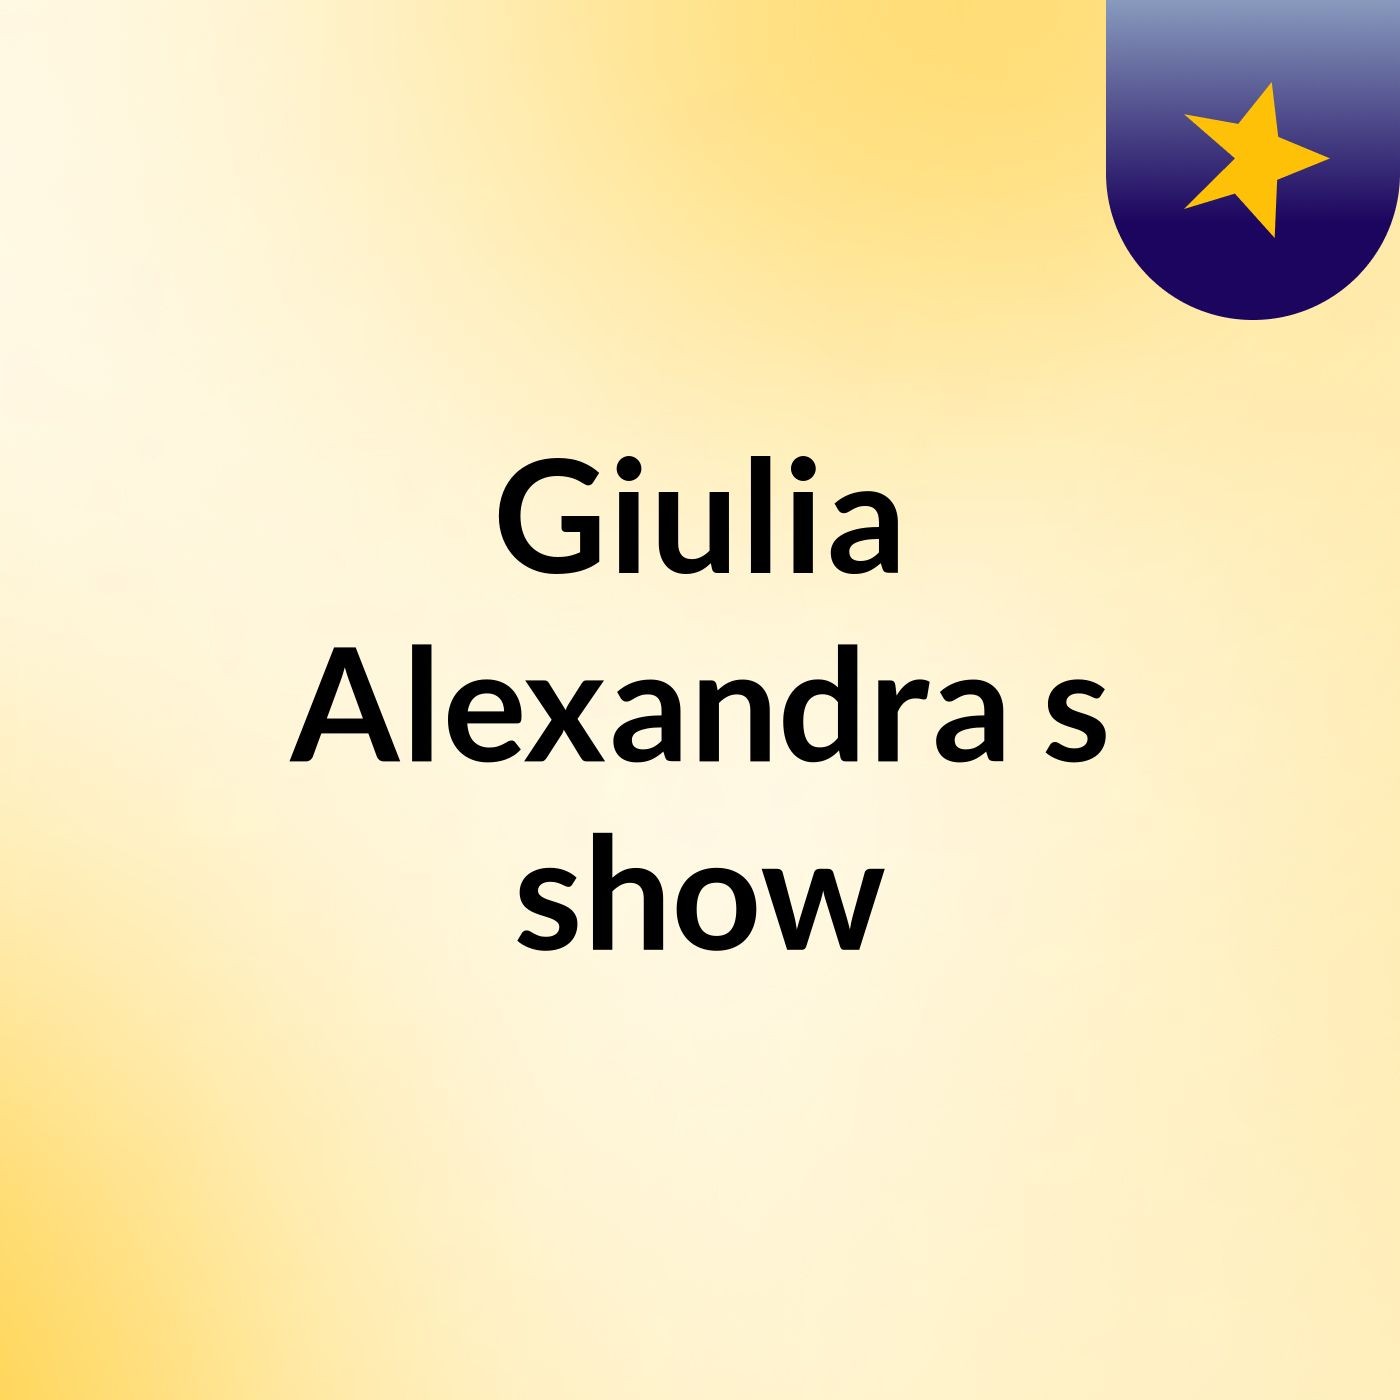 Giulia Alexandra's show